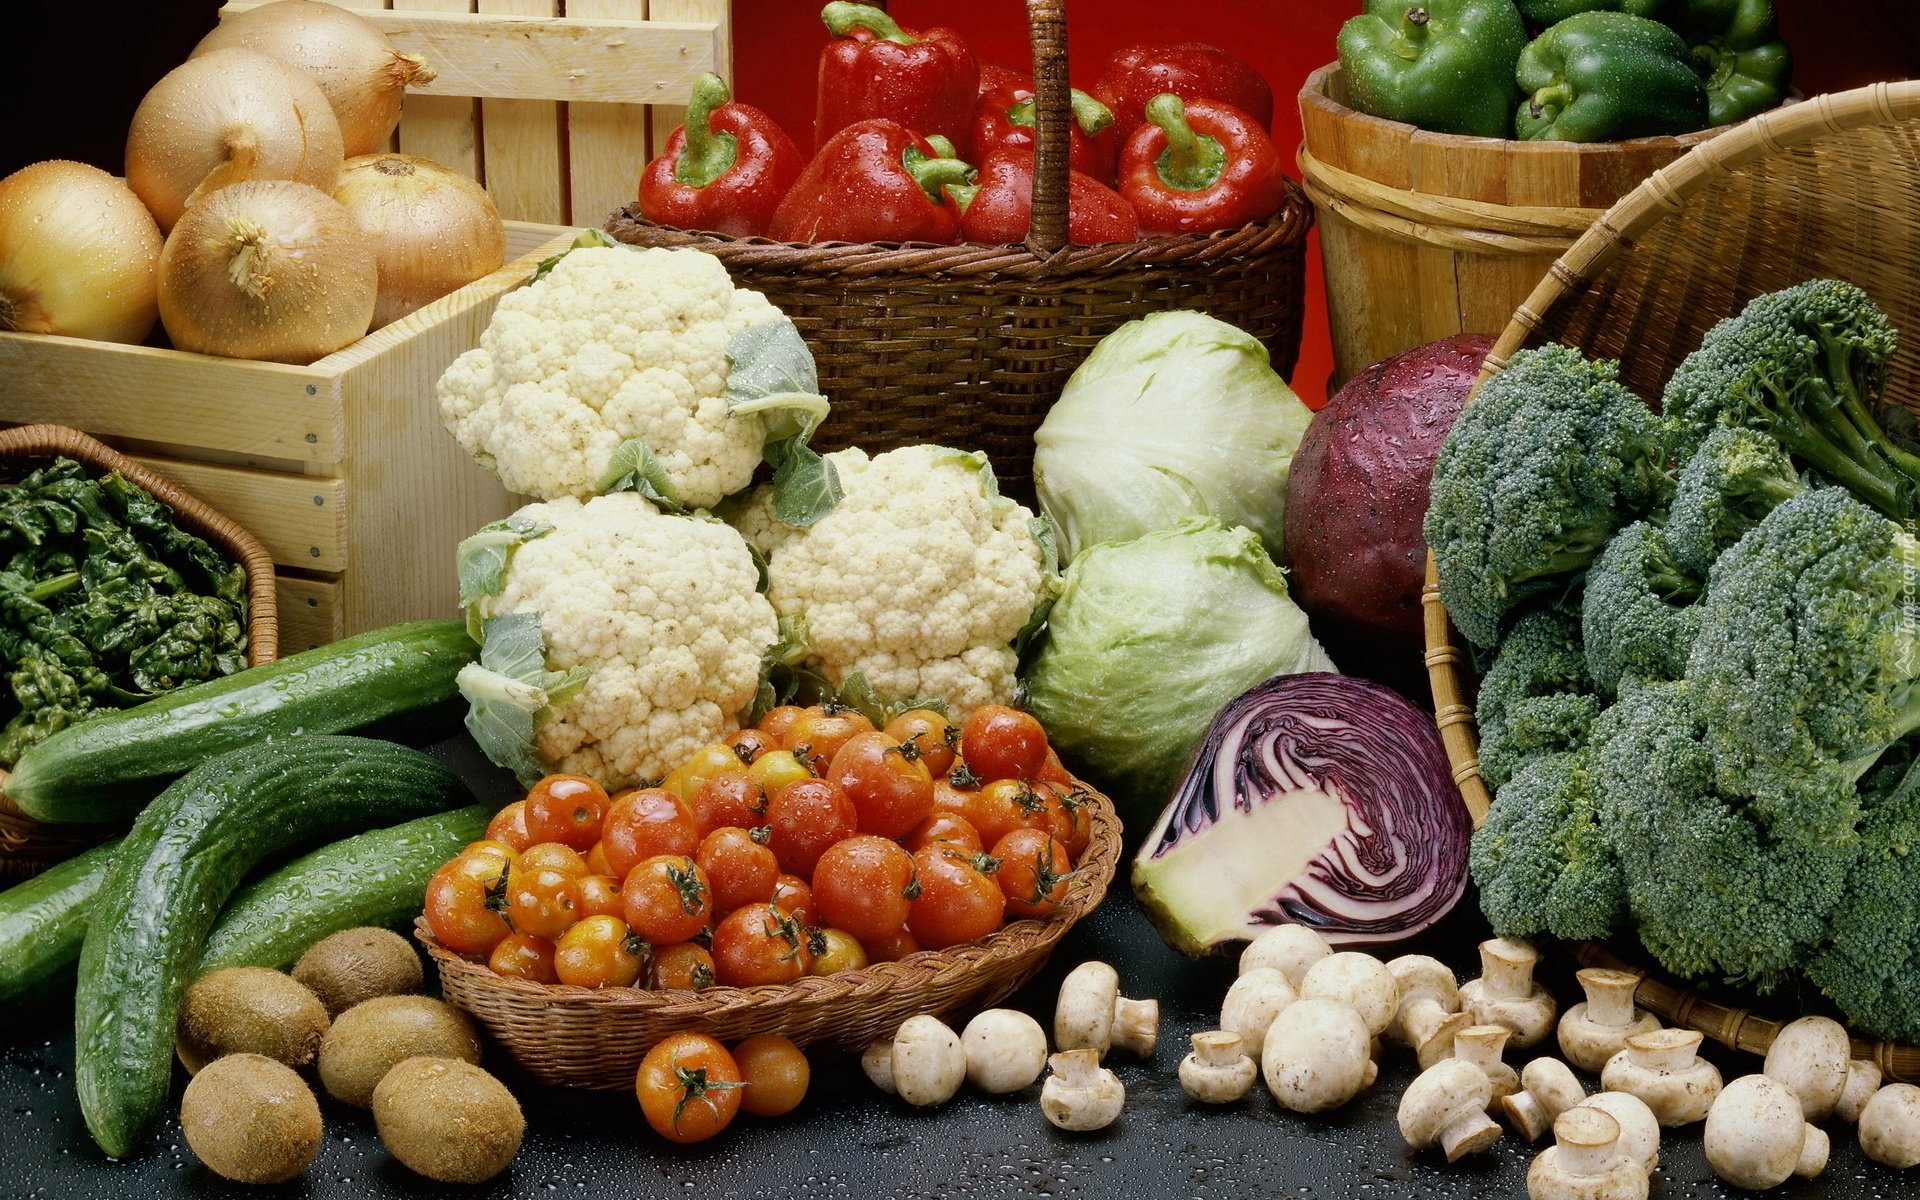 Warzywa, Cebula, Kalafiory, Brokuły, Pomidory, Pieczarki, Kapusta, Czerwona, Ogórki, Papryka